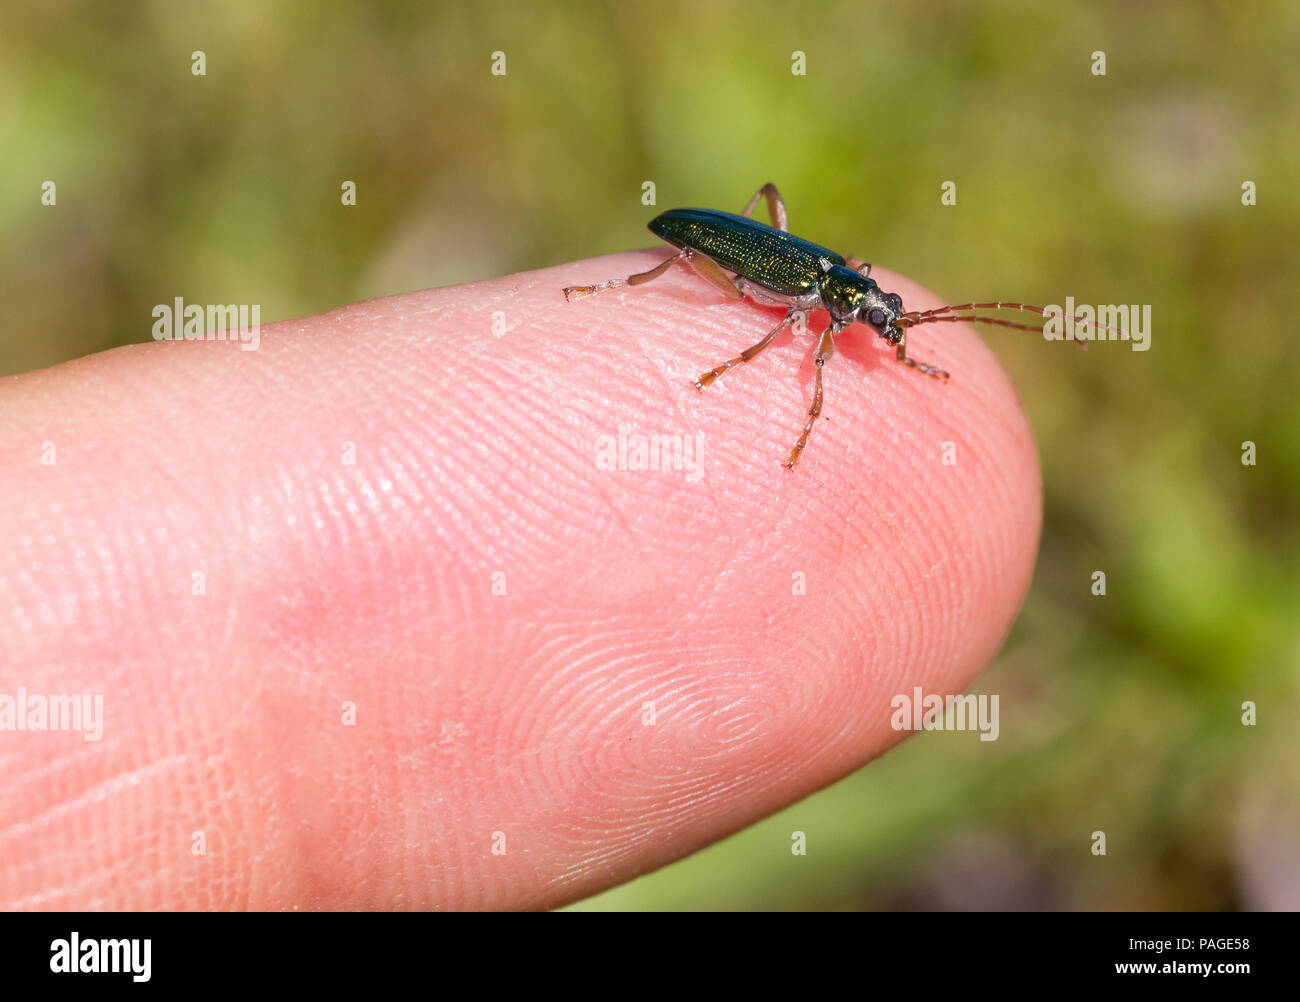 Petit bug assis sur un doigt, selective focus Banque D'Images